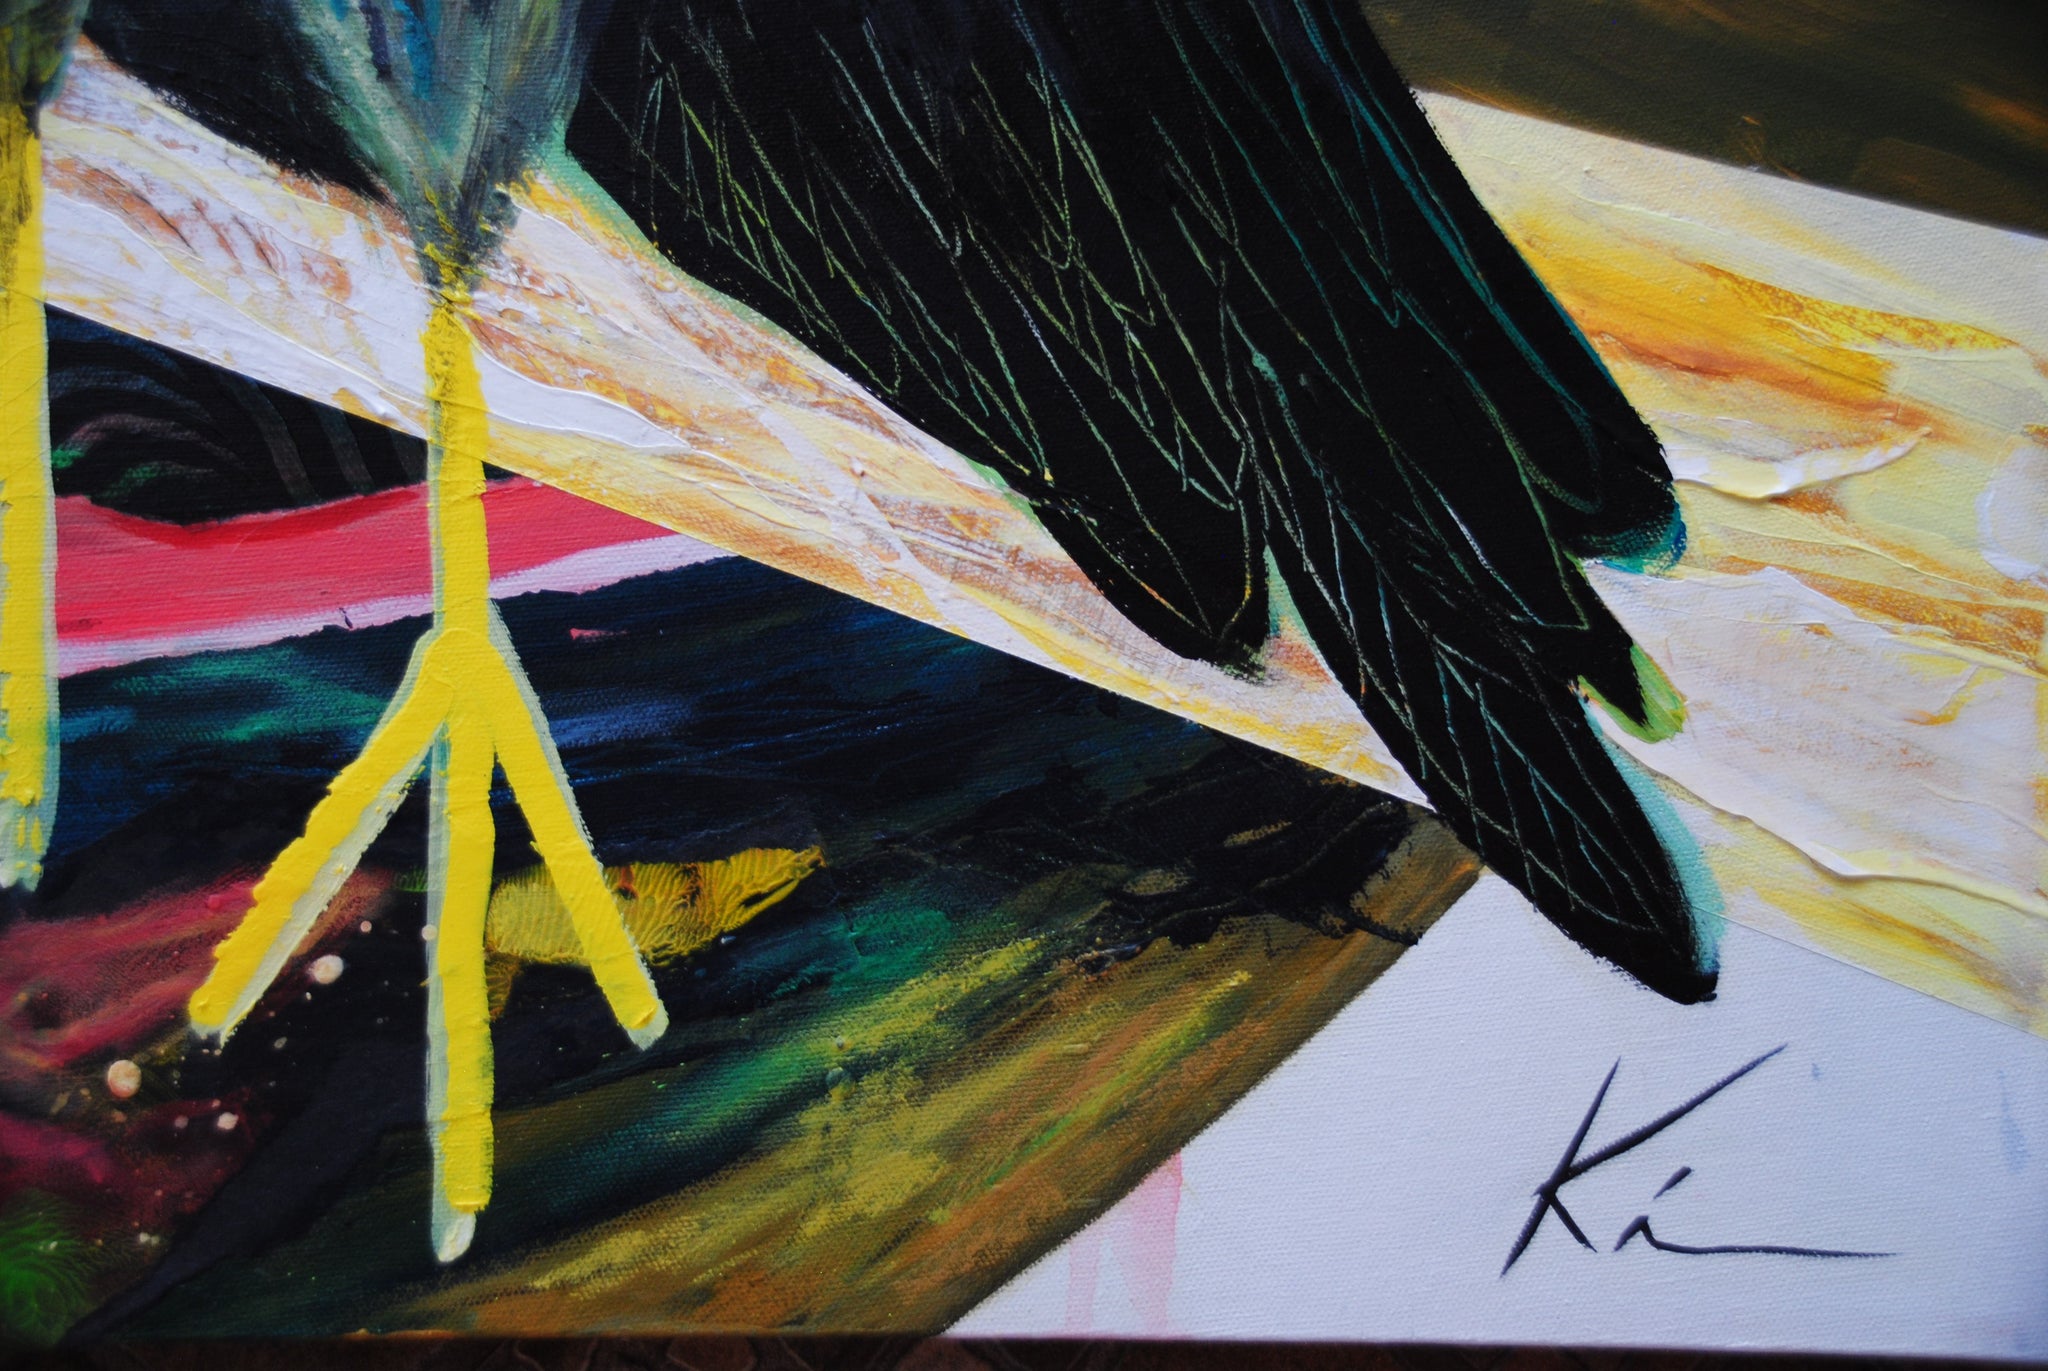 Détail d'une peinture acrylique illustrant de manière naïve un oiseau, avec la signature de l'artiste visible en bas à droite.